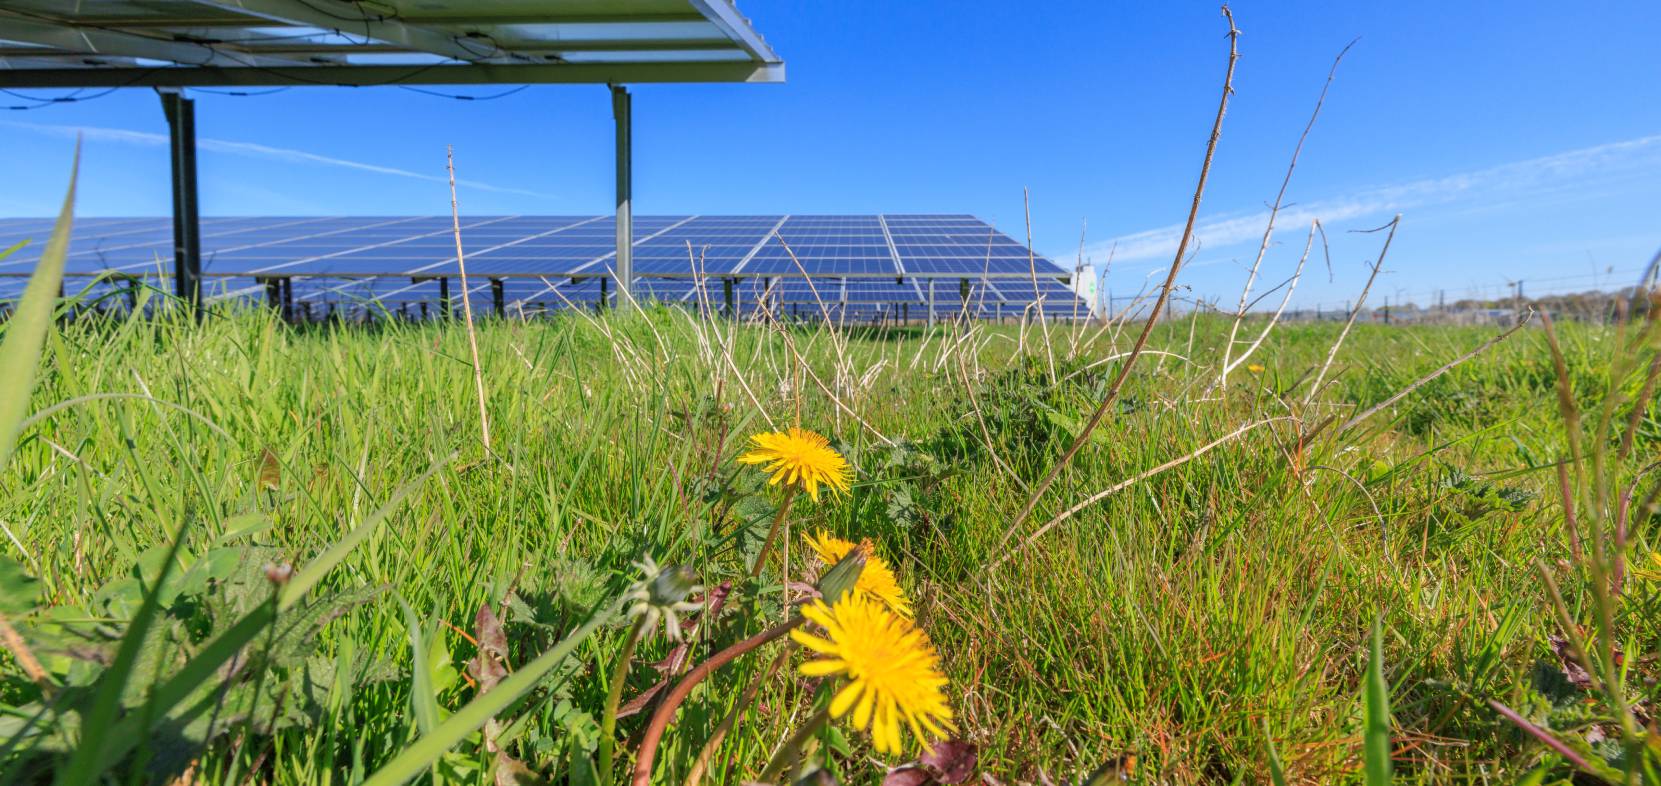 Solaranlagen auf landwirtschaftlichen Flächen: Umweltschutz & Solarenergie sind gut miteinander vereinbar.